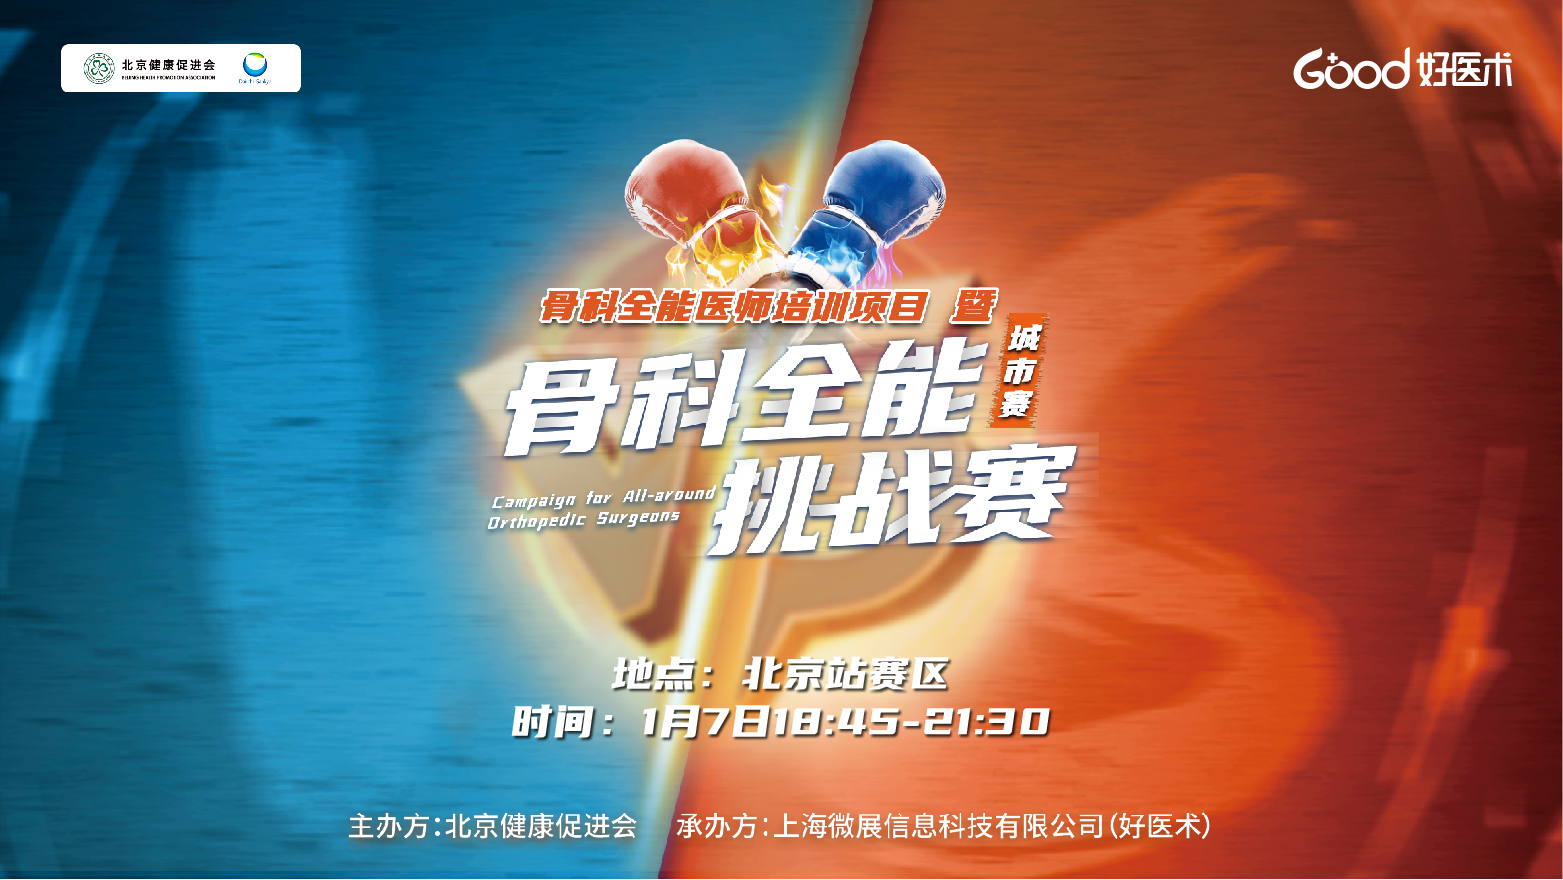 “骨科全能挑战赛”城市赛——北京站即将火热开战，今晚18:45邀您观战！